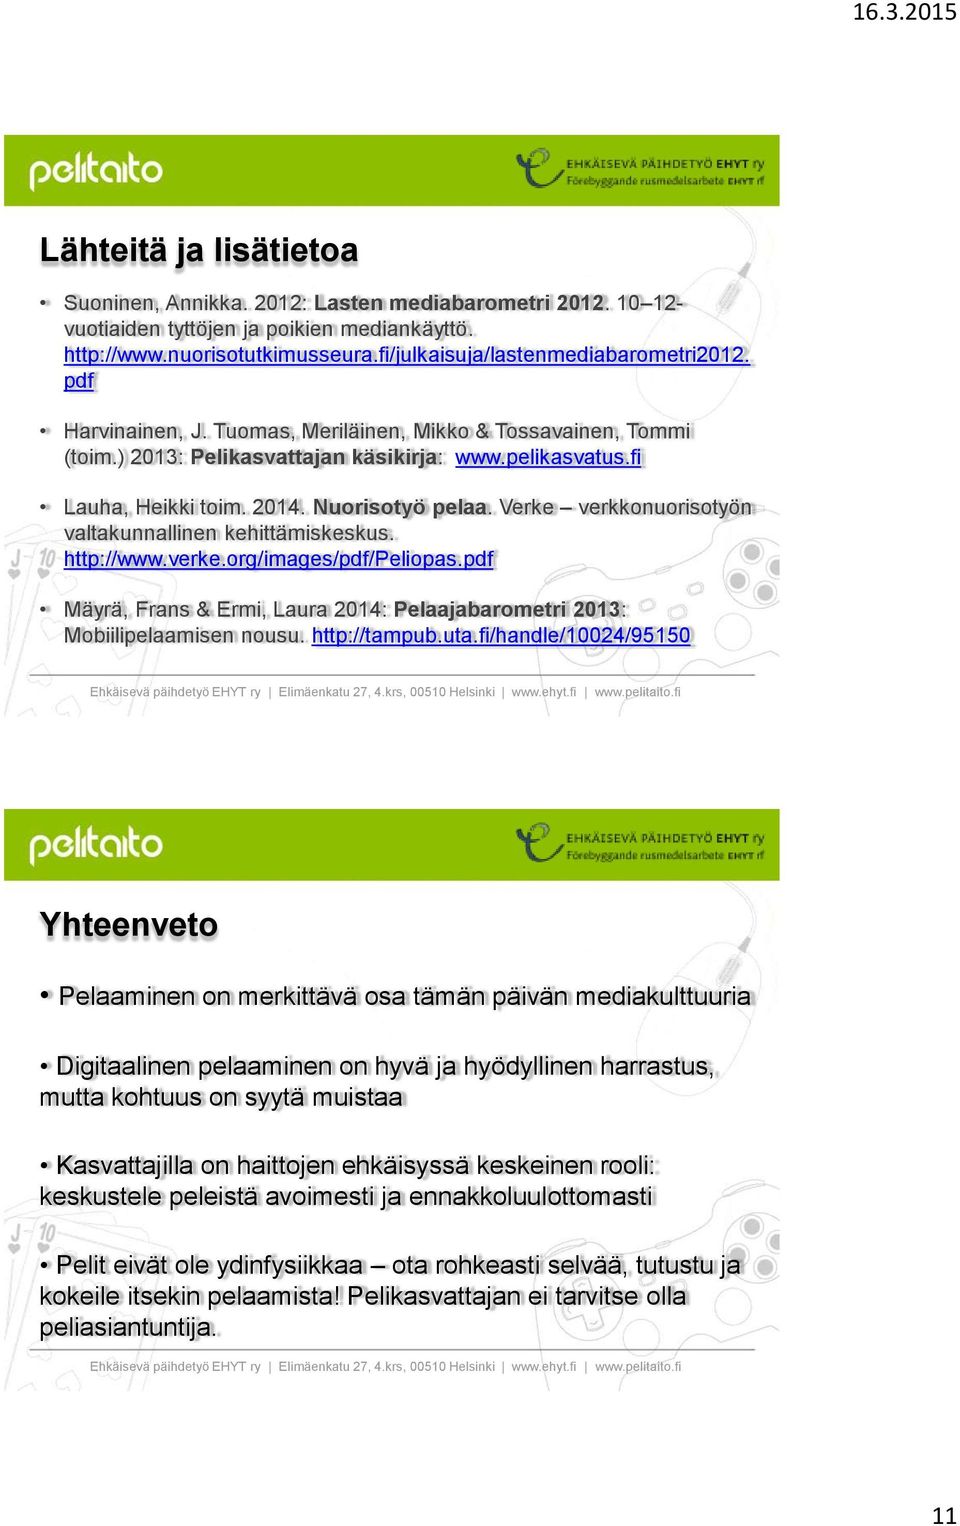 Verke verkkonuorisotyön valtakunnallinen kehittämiskeskus. http://www.verke.org/images/pdf/peliopas.pdf Mäyrä, Frans & Ermi, Laura 2014: Pelaajabarometri 2013: Mobiilipelaamisen nousu. http://tampub.